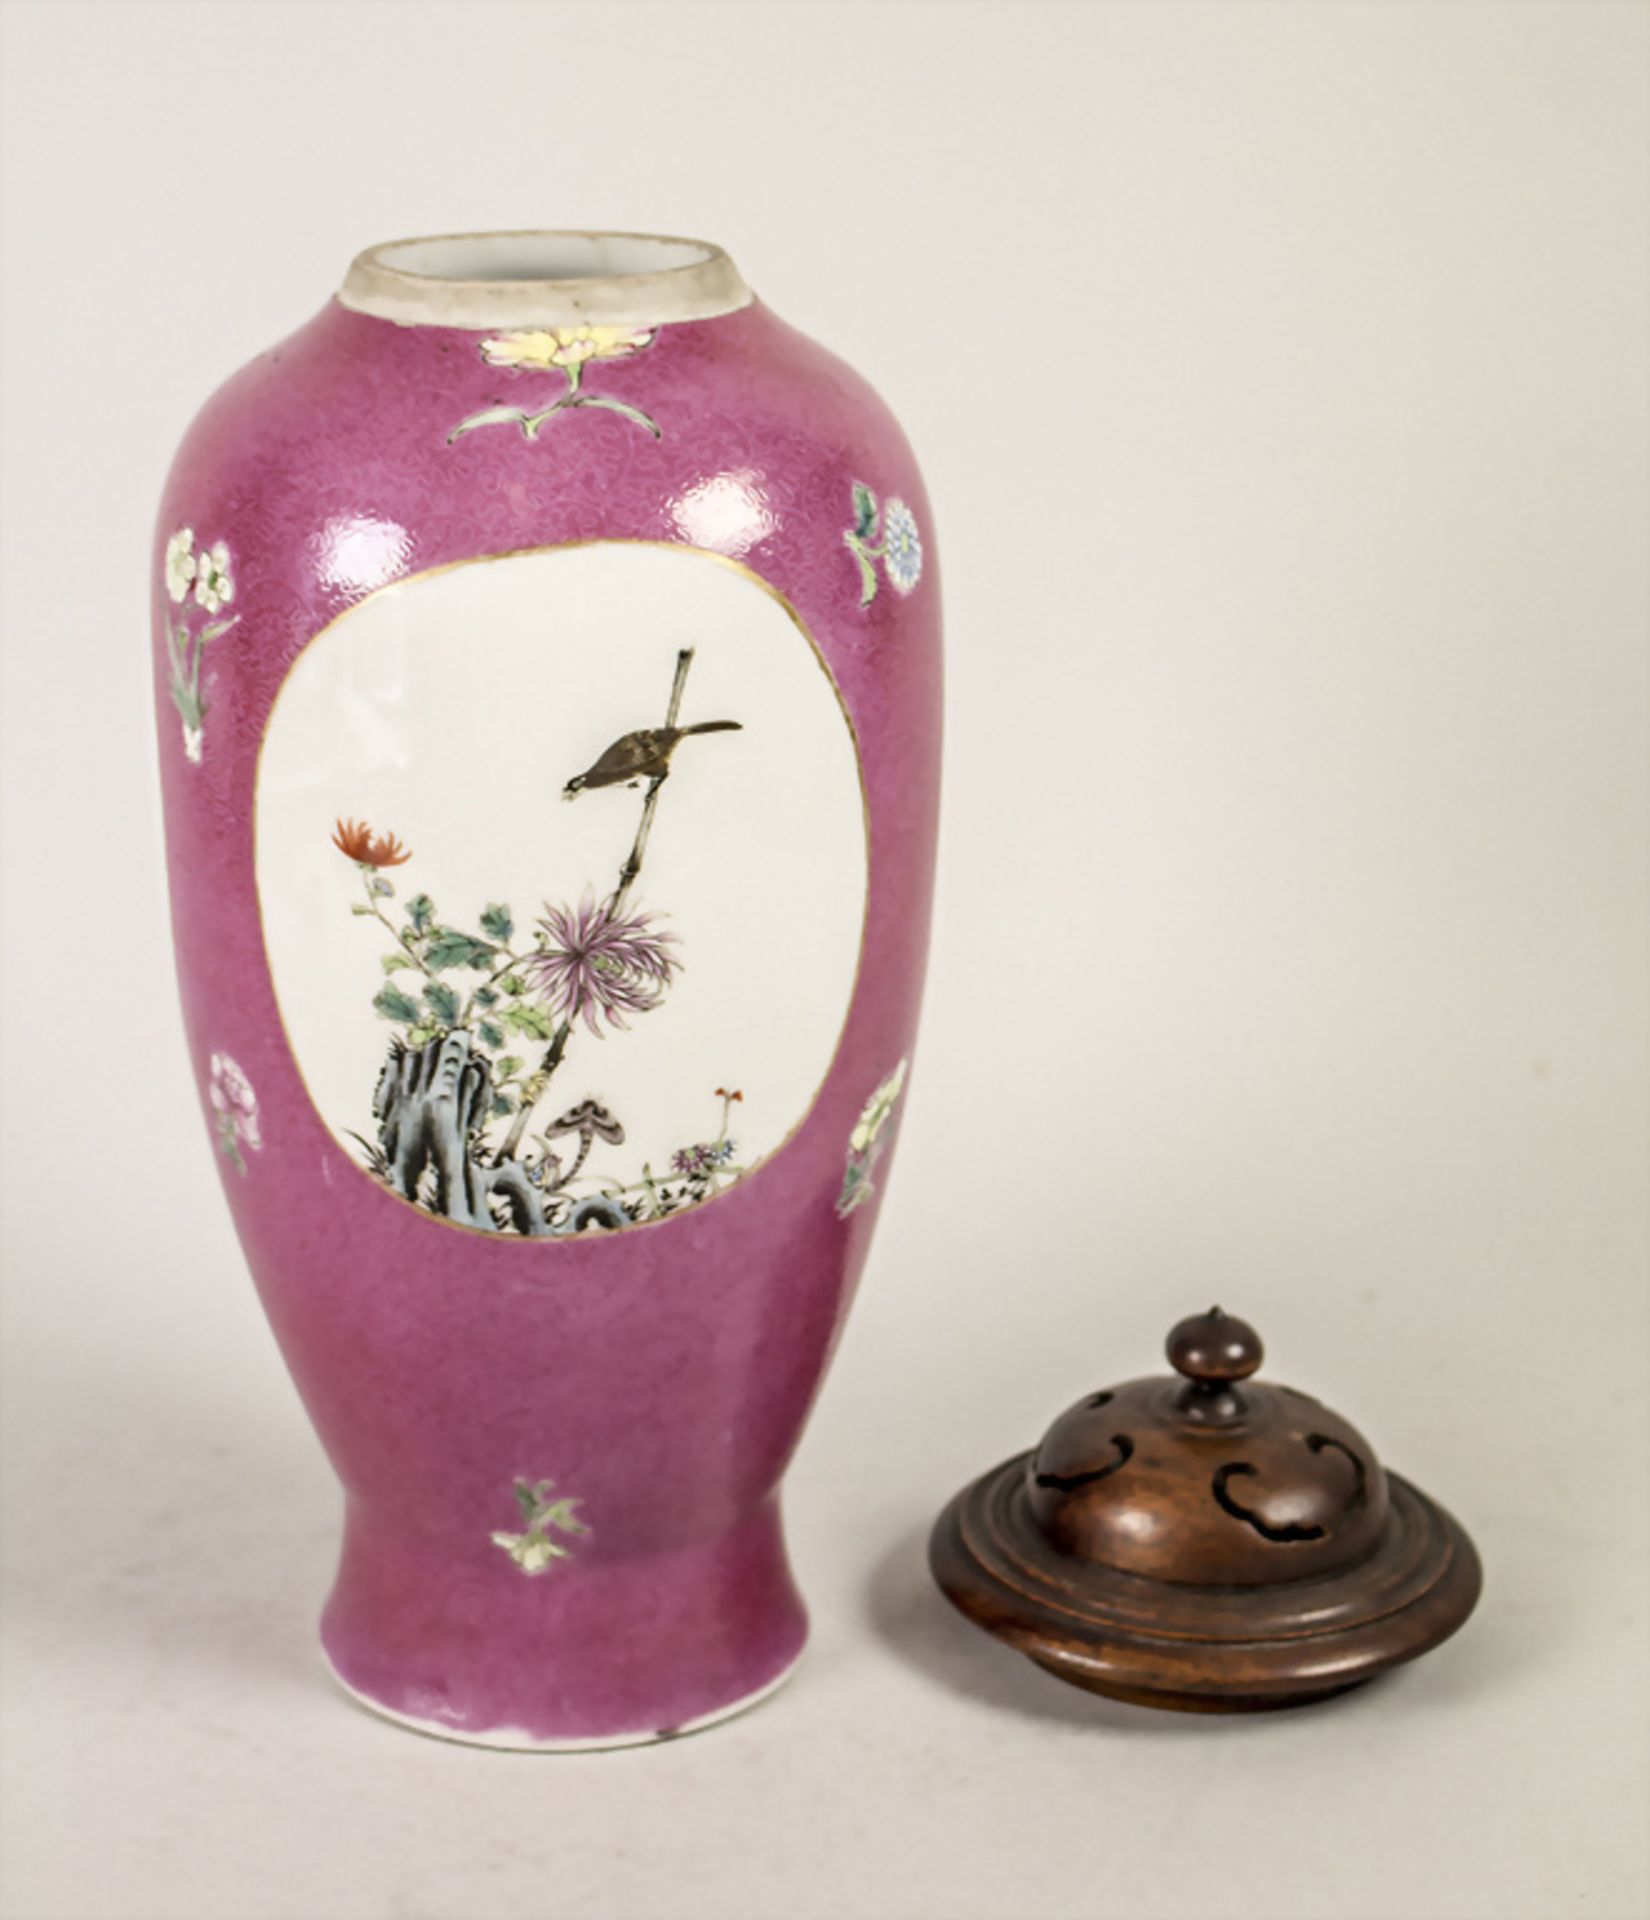 Ziervase / A decorative vase, China, Qing Dynastie (1644-1911) - Bild 2 aus 7